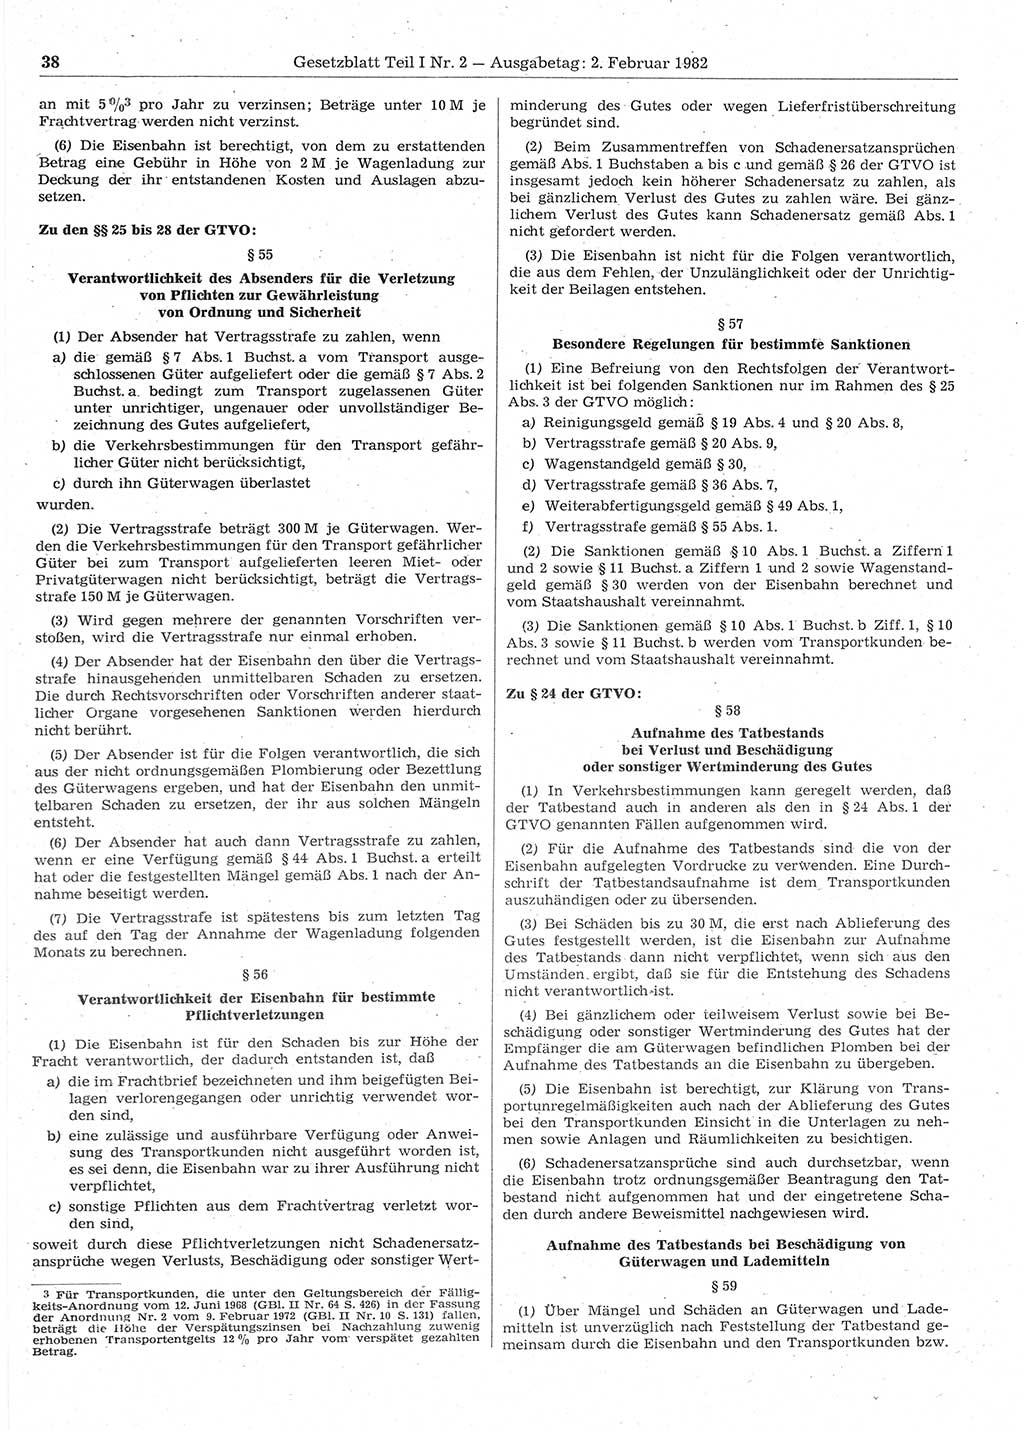 Gesetzblatt (GBl.) der Deutschen Demokratischen Republik (DDR) Teil Ⅰ 1982, Seite 38 (GBl. DDR Ⅰ 1982, S. 38)